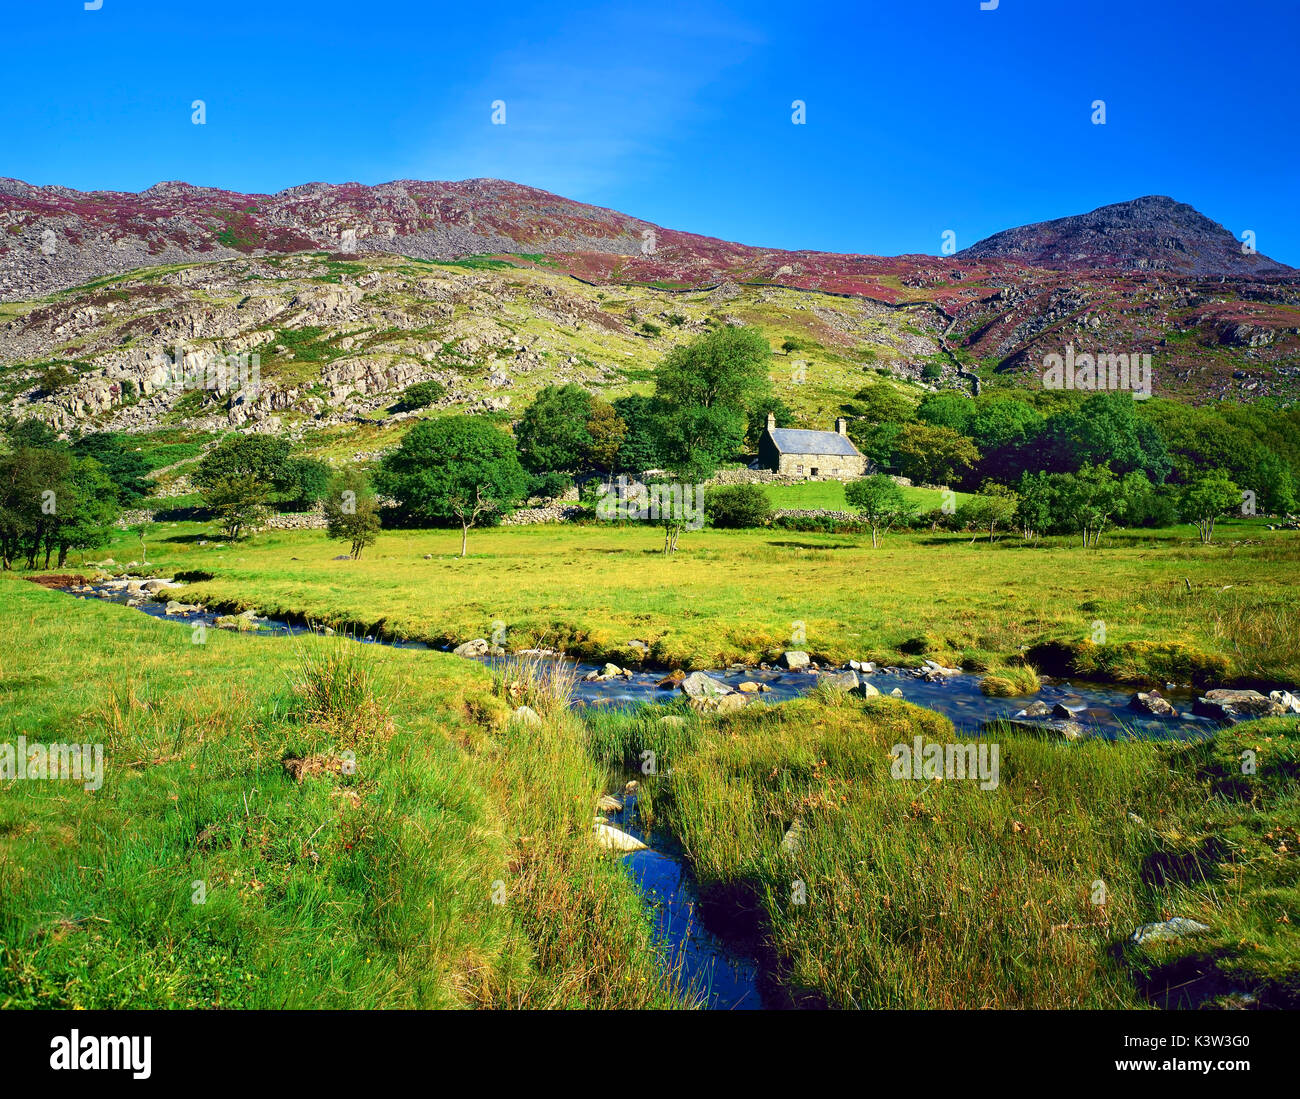 Une vue d'été d'une ferme isolée dans le parc national de Snowdonia, Pays de Galles, Royaume-Uni. Banque D'Images